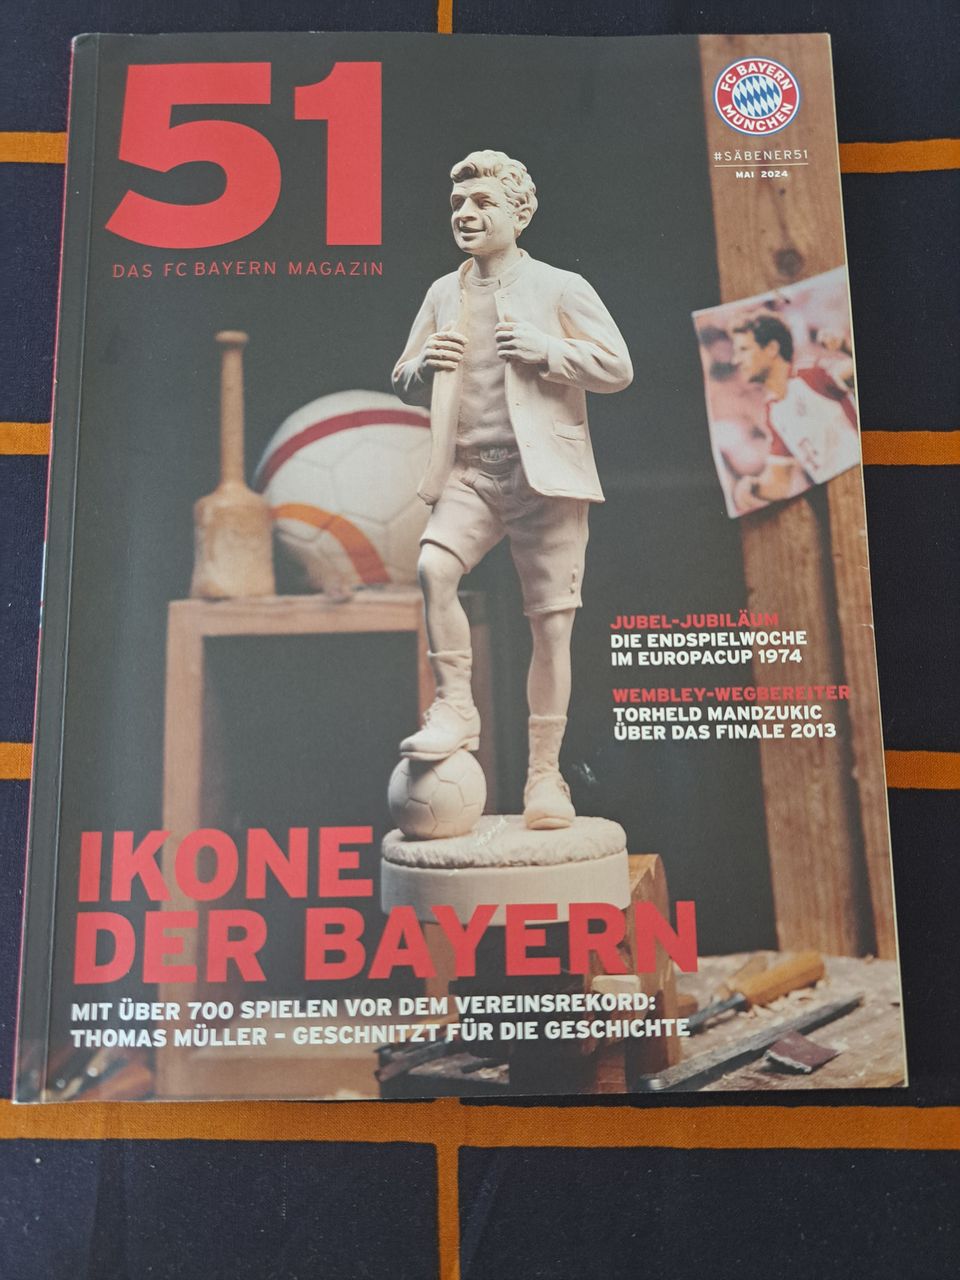 Das FC Bayern magazin